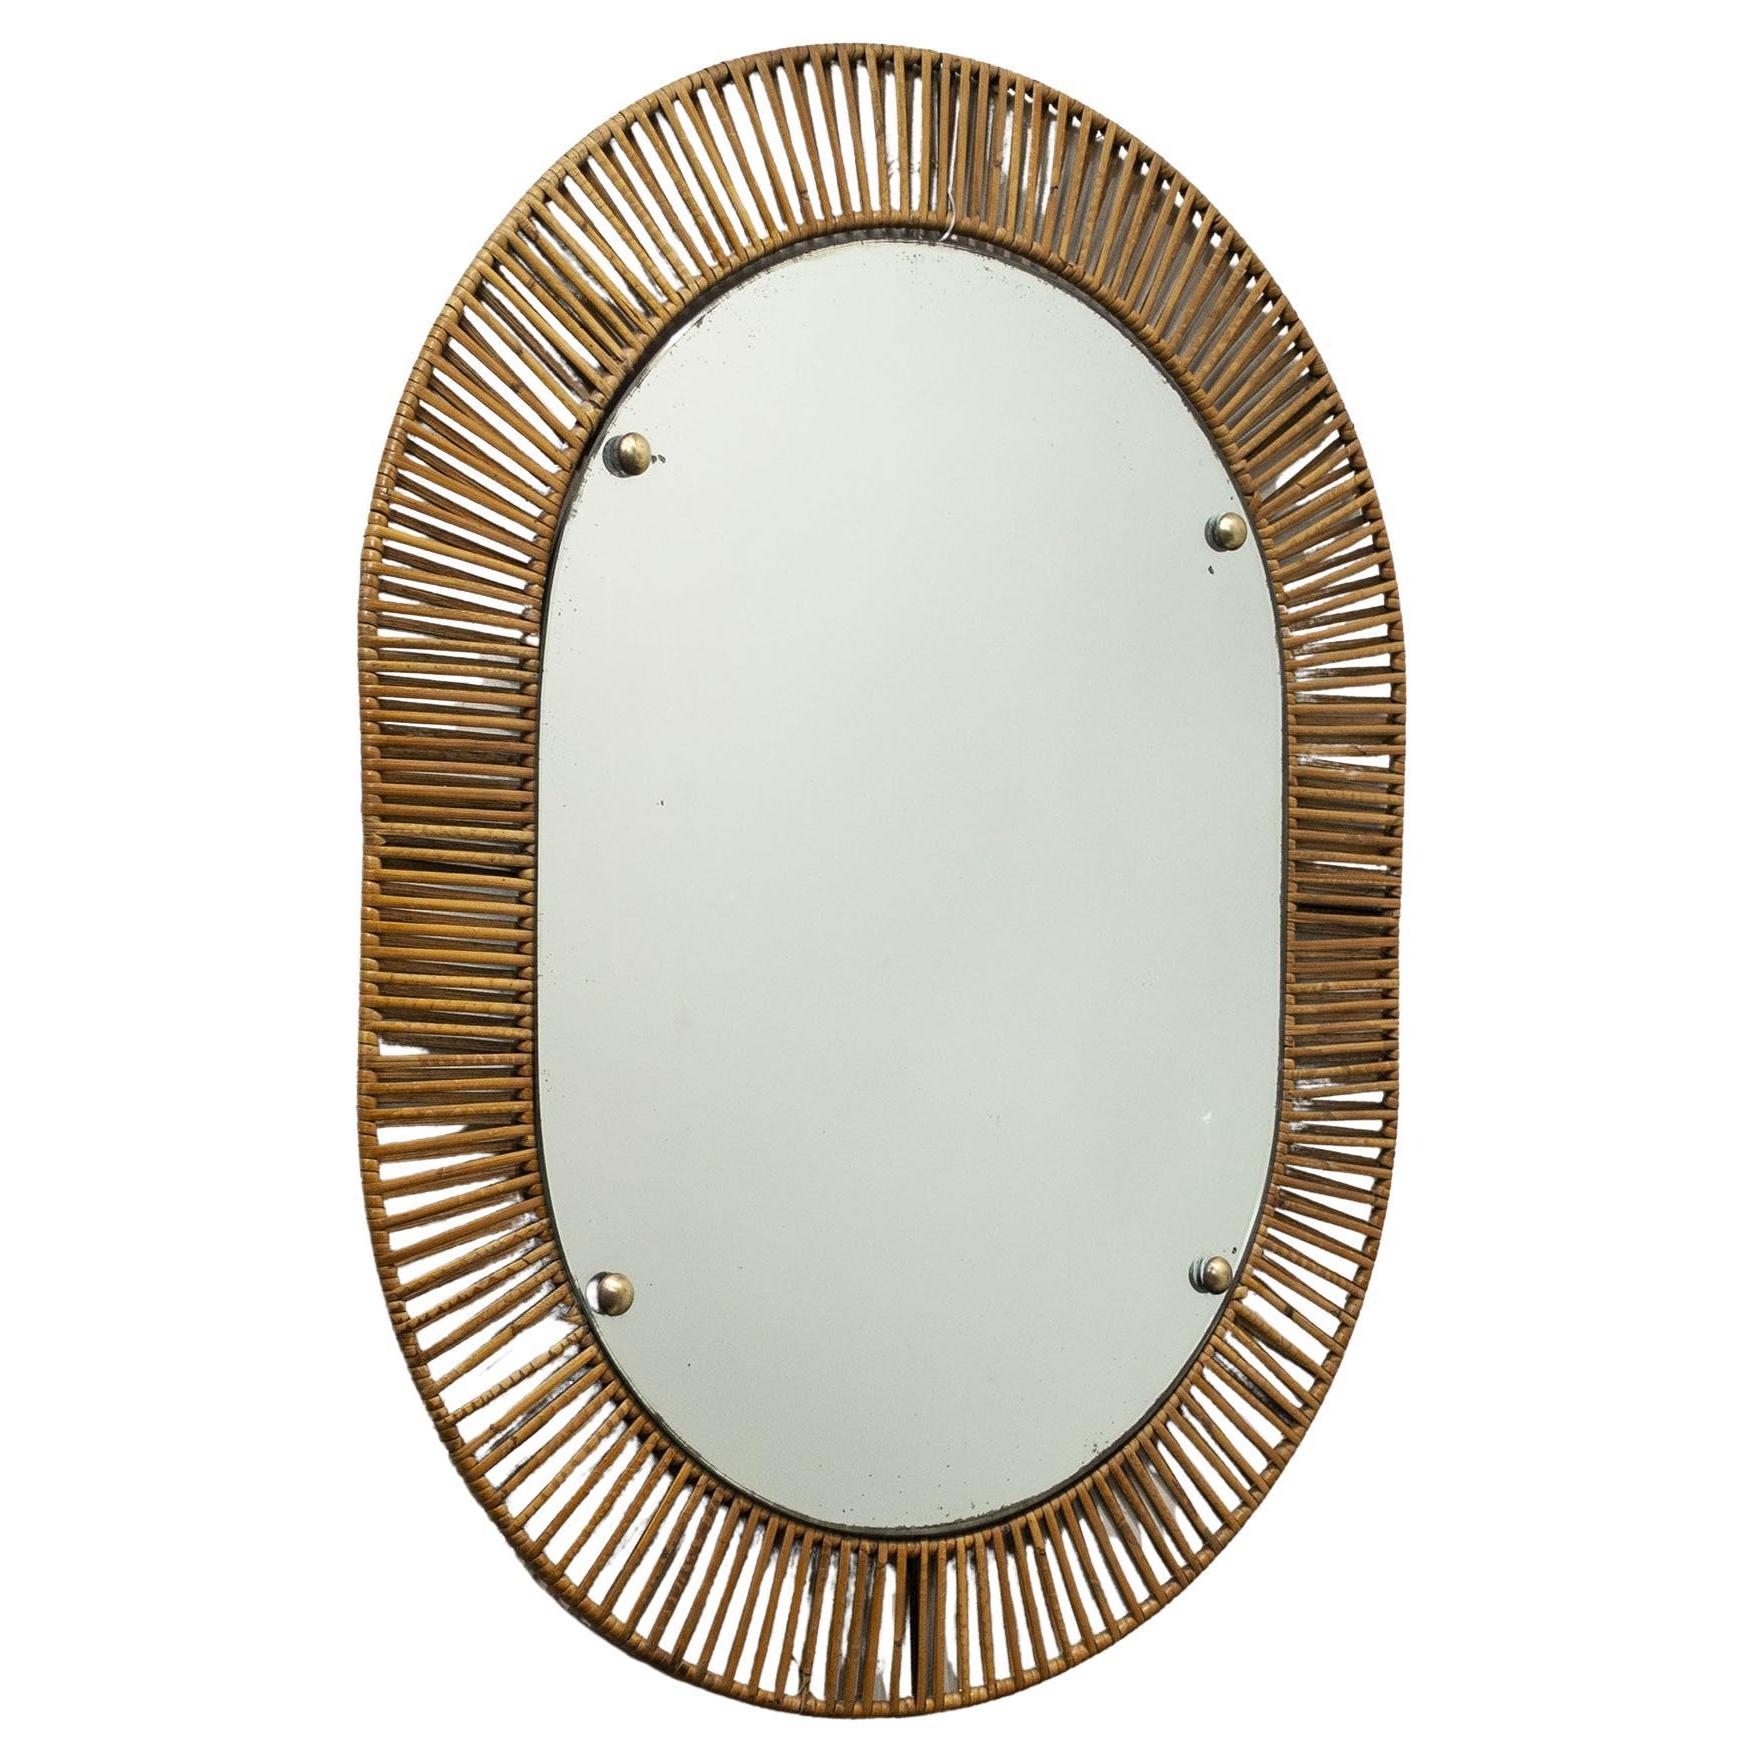 Miroir en bambou raffiné avec cadre en fer forgé, production italienne de la fin des années 1950
Le miroir mesure 46 cm de large et 64 cm de haut.